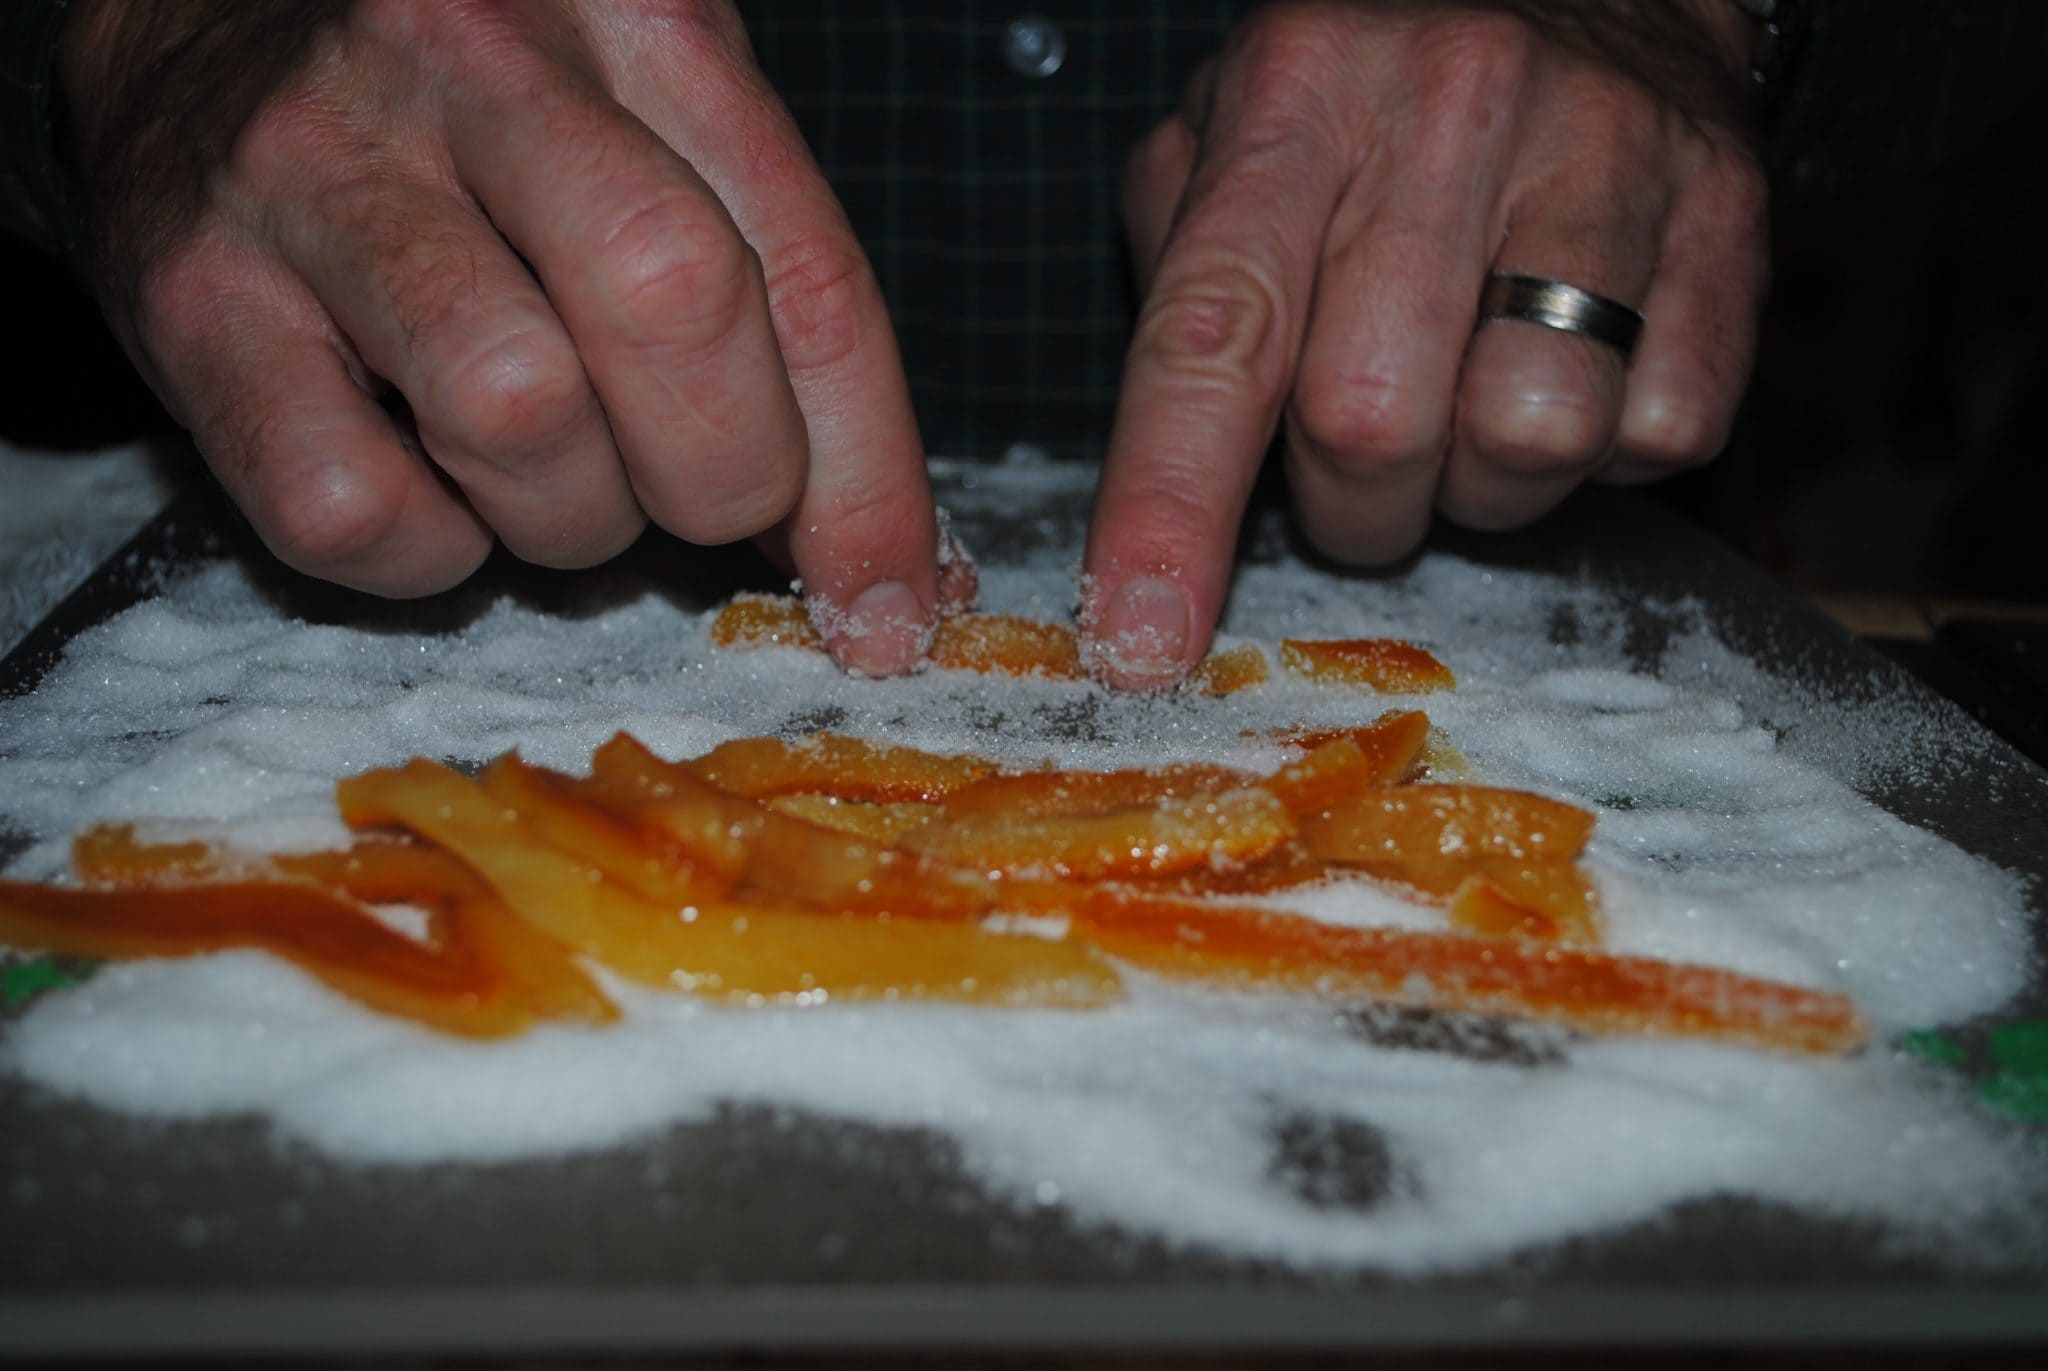 Fried orange peels being rolled in sugar.